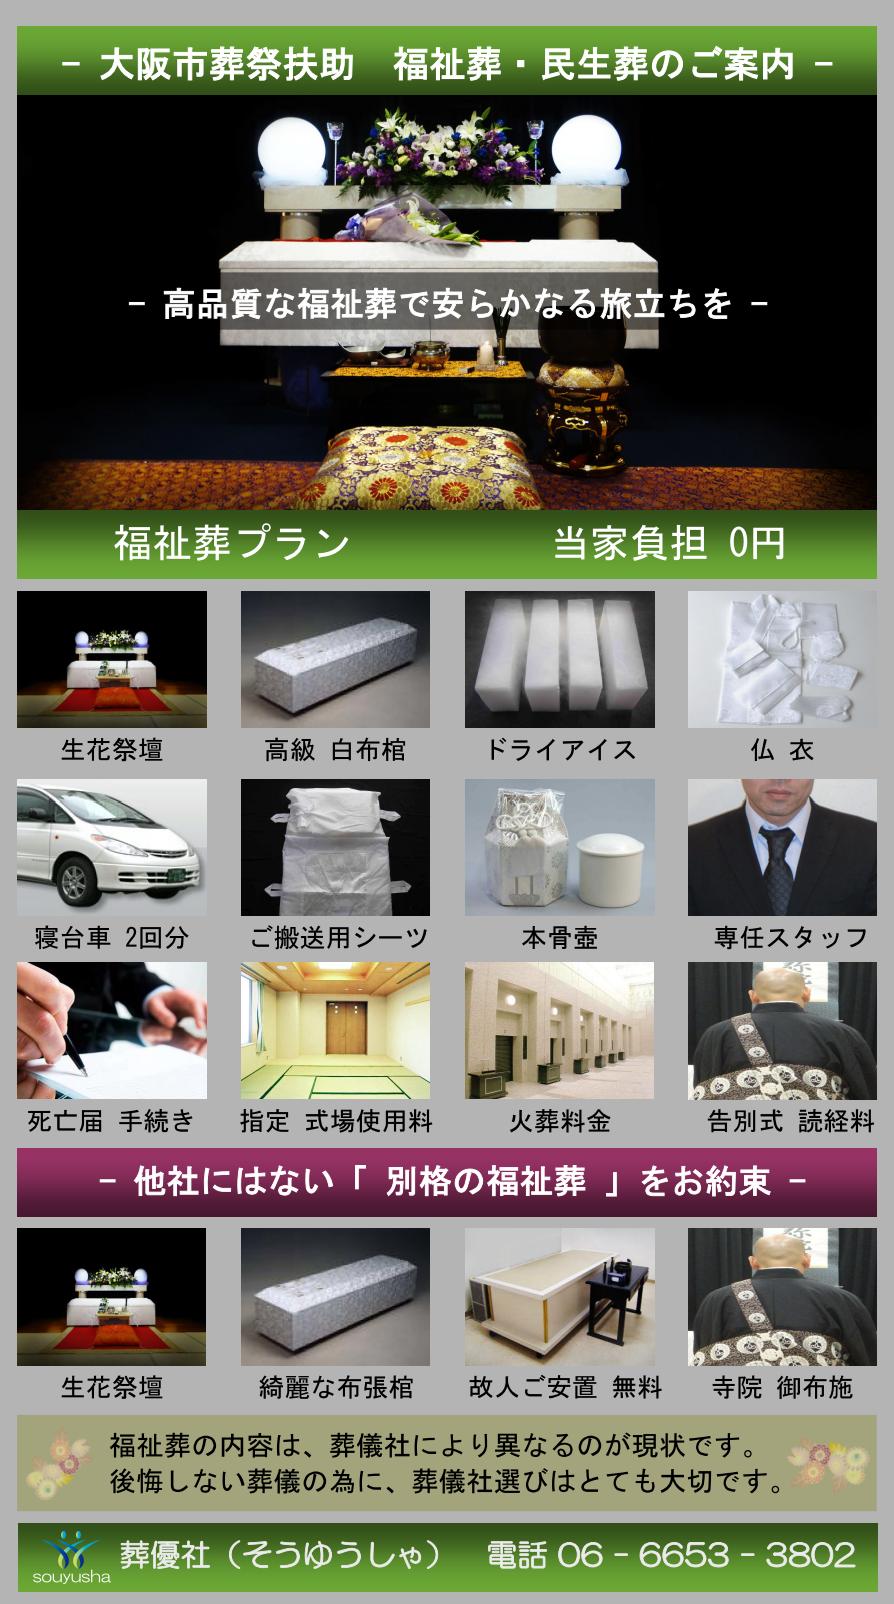 大阪市 生野区での福祉葬、生活保護者のお葬式のご案内